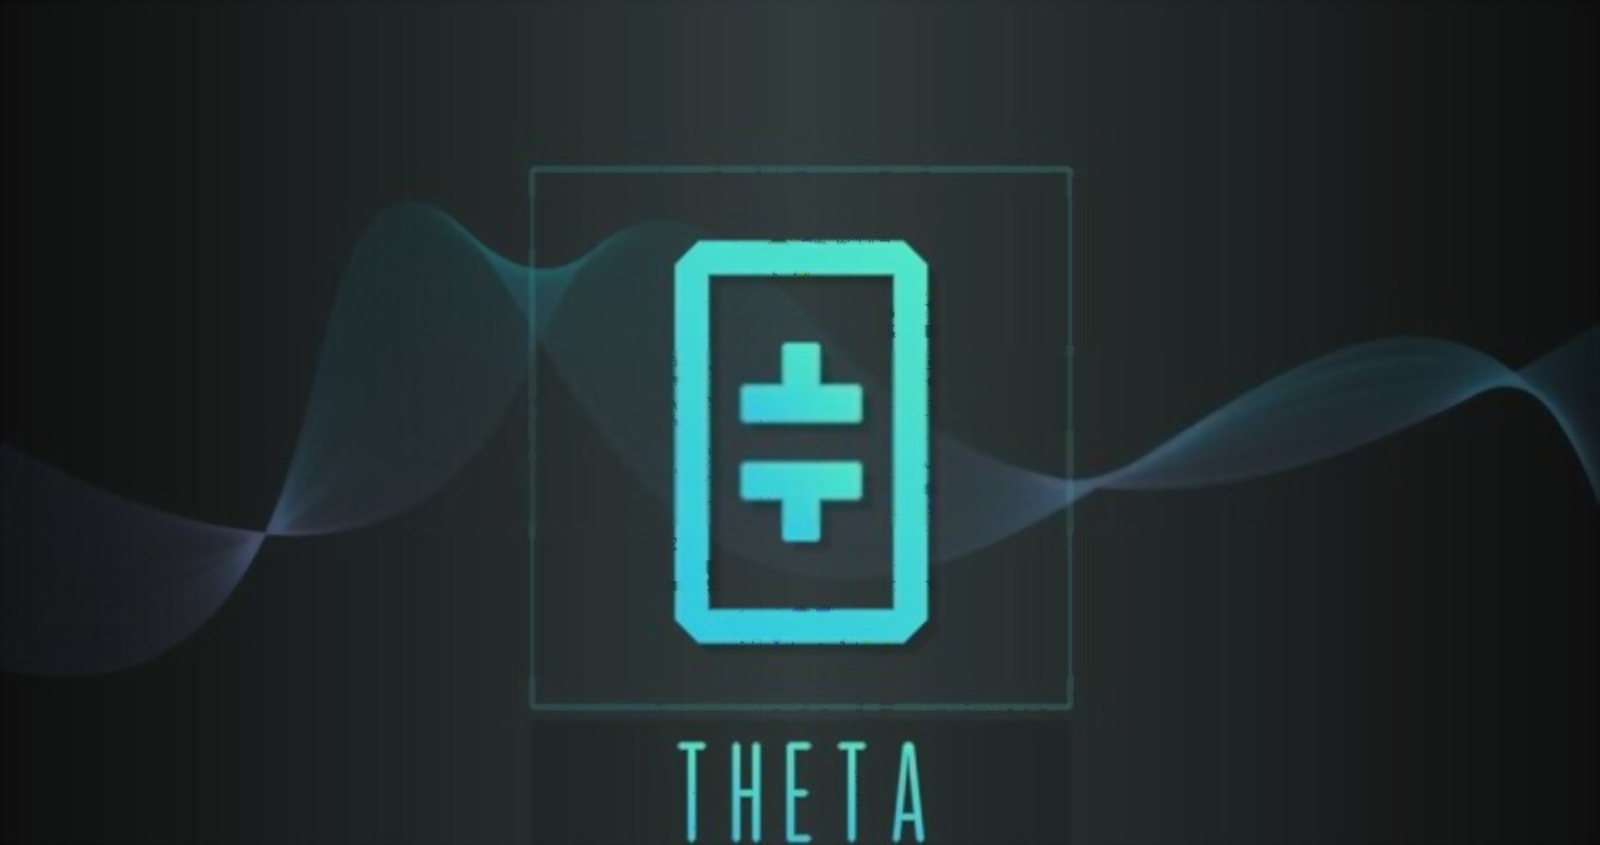 Theta Network (THETA) Launches the Theta Metachain